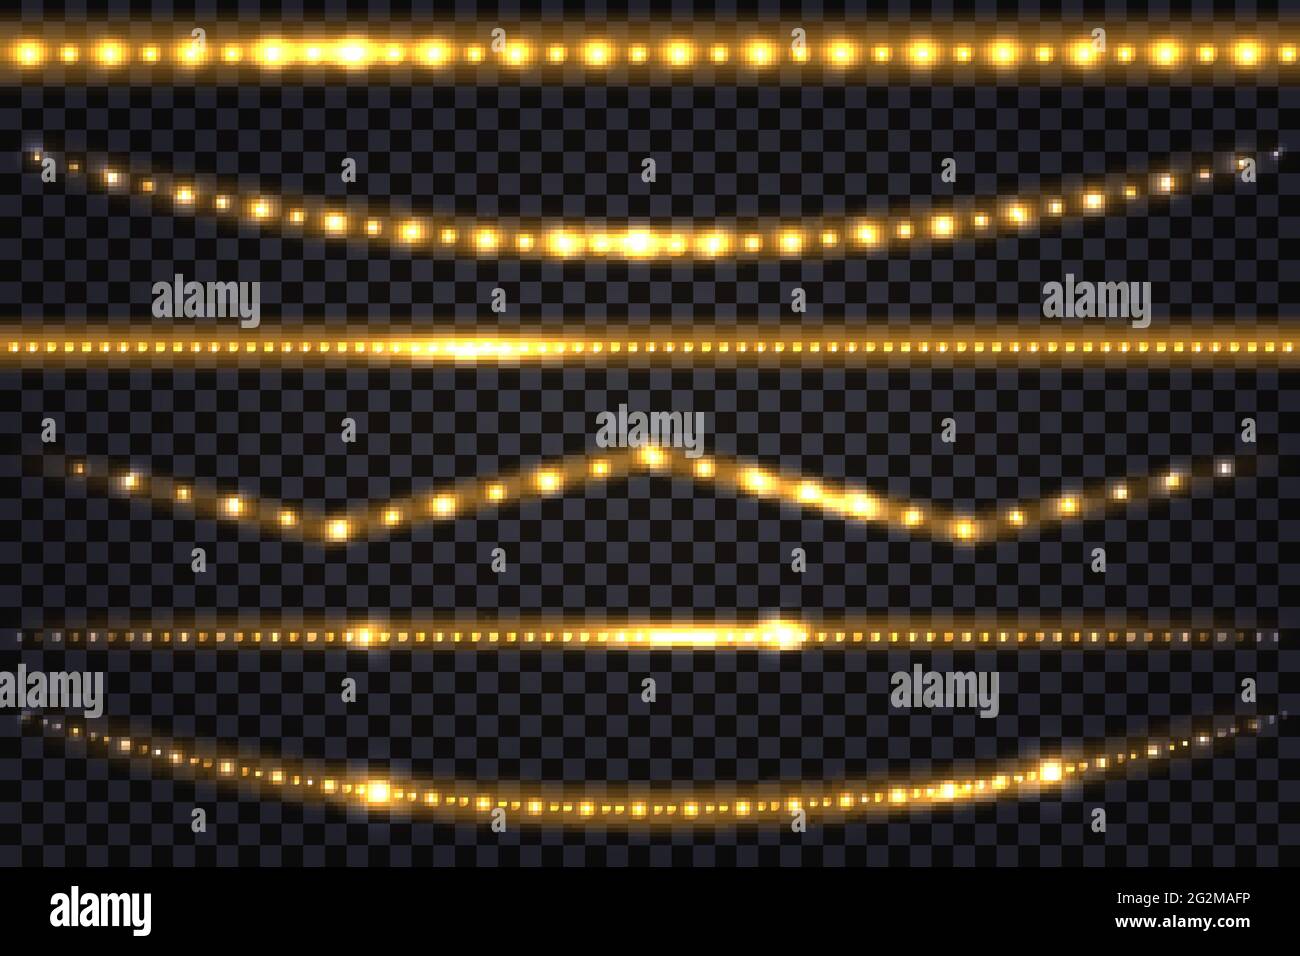 LED-Lichtgirlanden mit goldenem Neon-Leuchteffekt und Glitzerlicht-Set aus Linien, golden beleuchteten Streifen und Wellen, isolierten Bändern auf transparentem Bac Stock Vektor